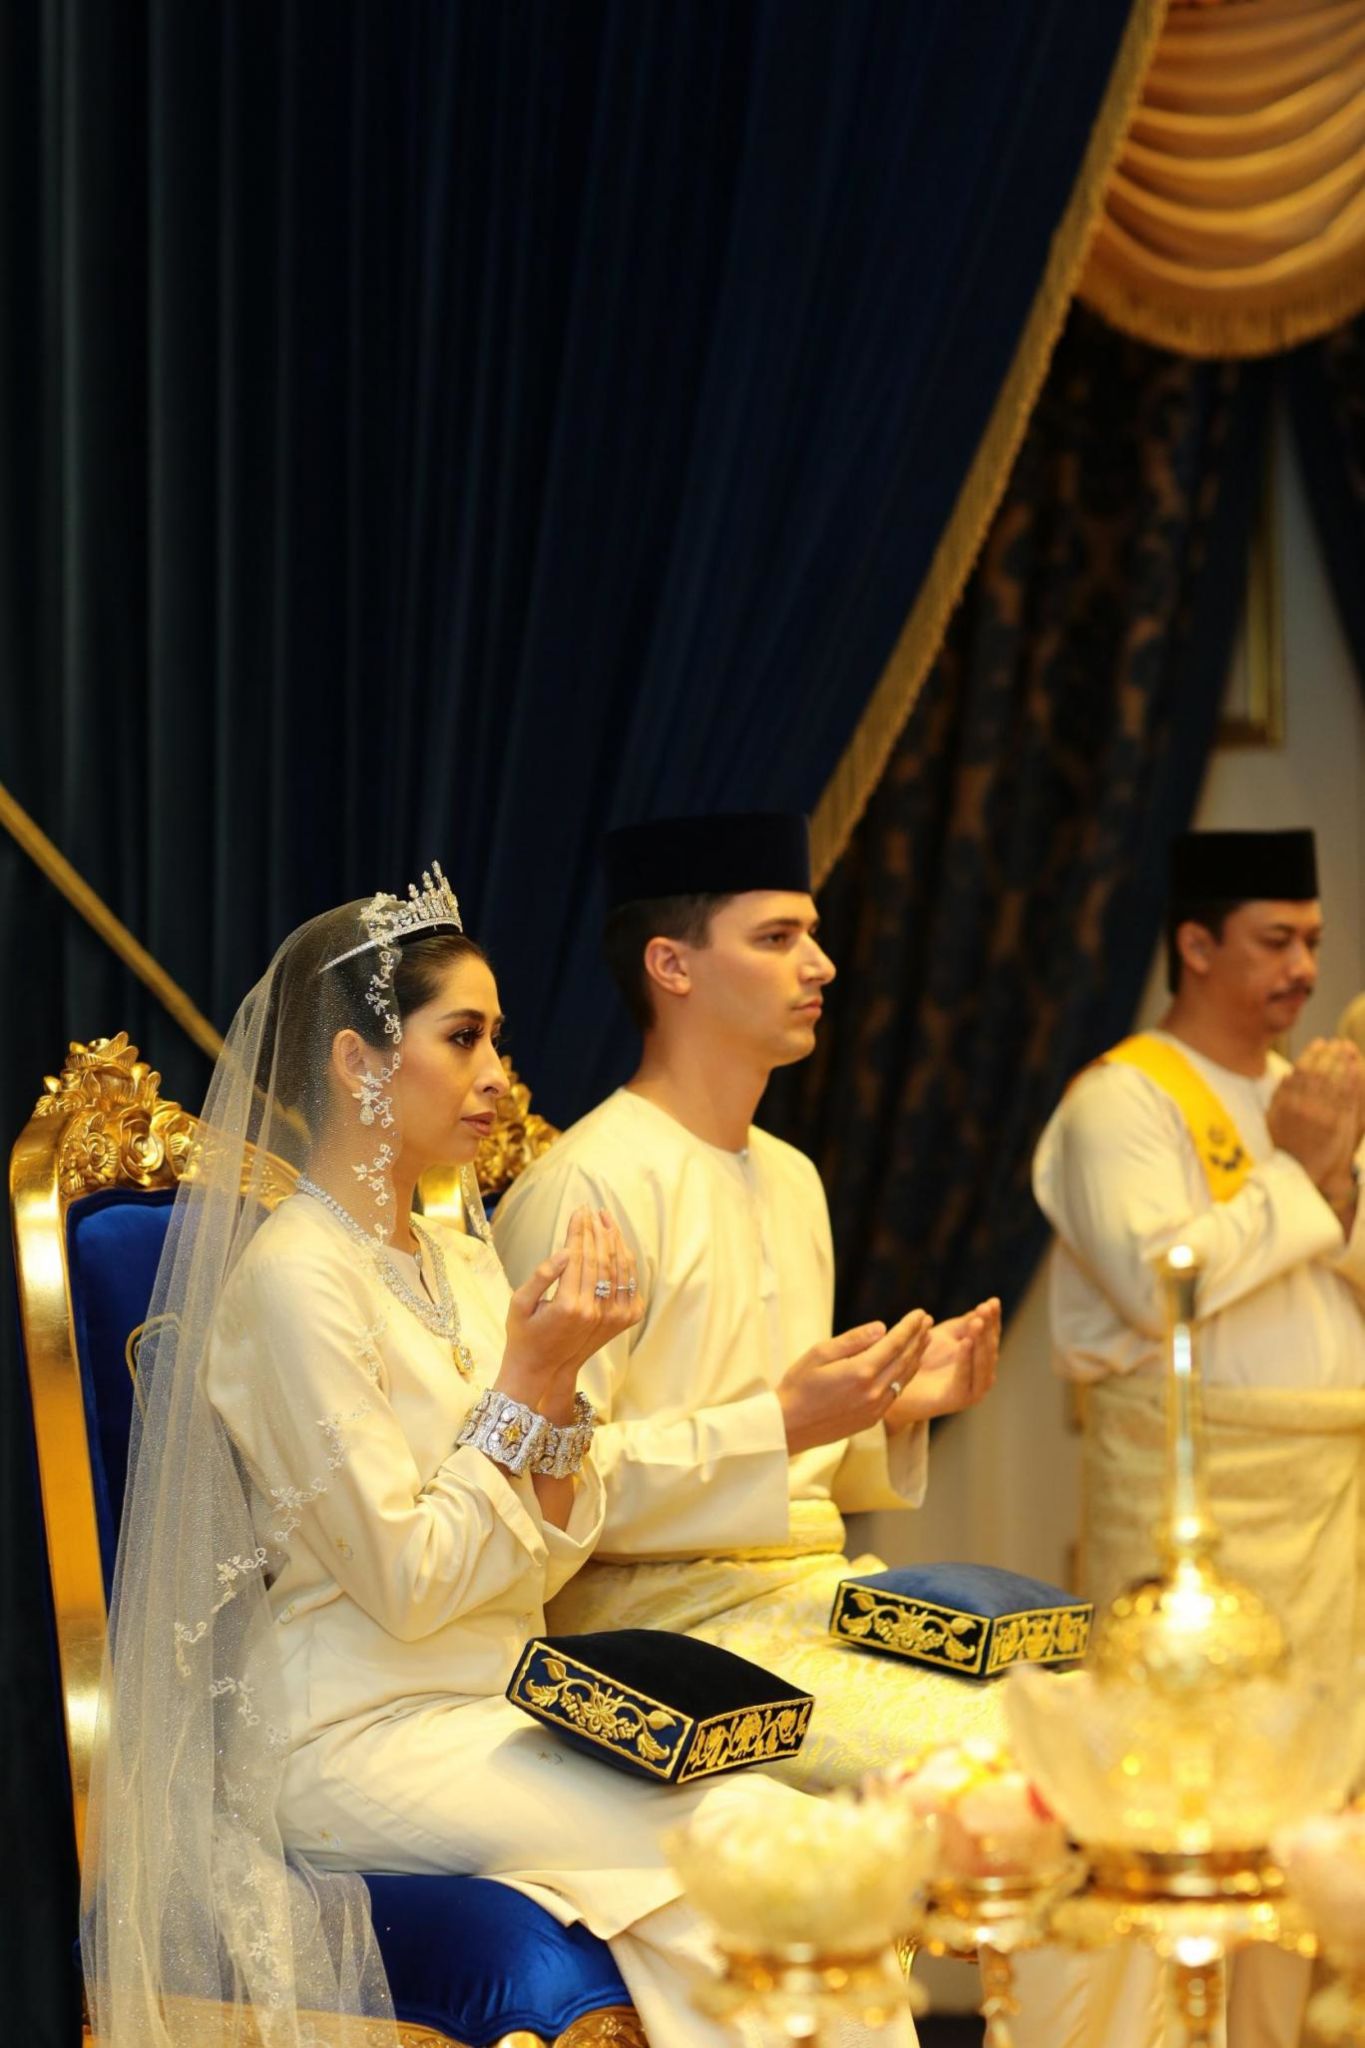 Princess of Johor Tunku Aminah marries Dutchman Dennis 